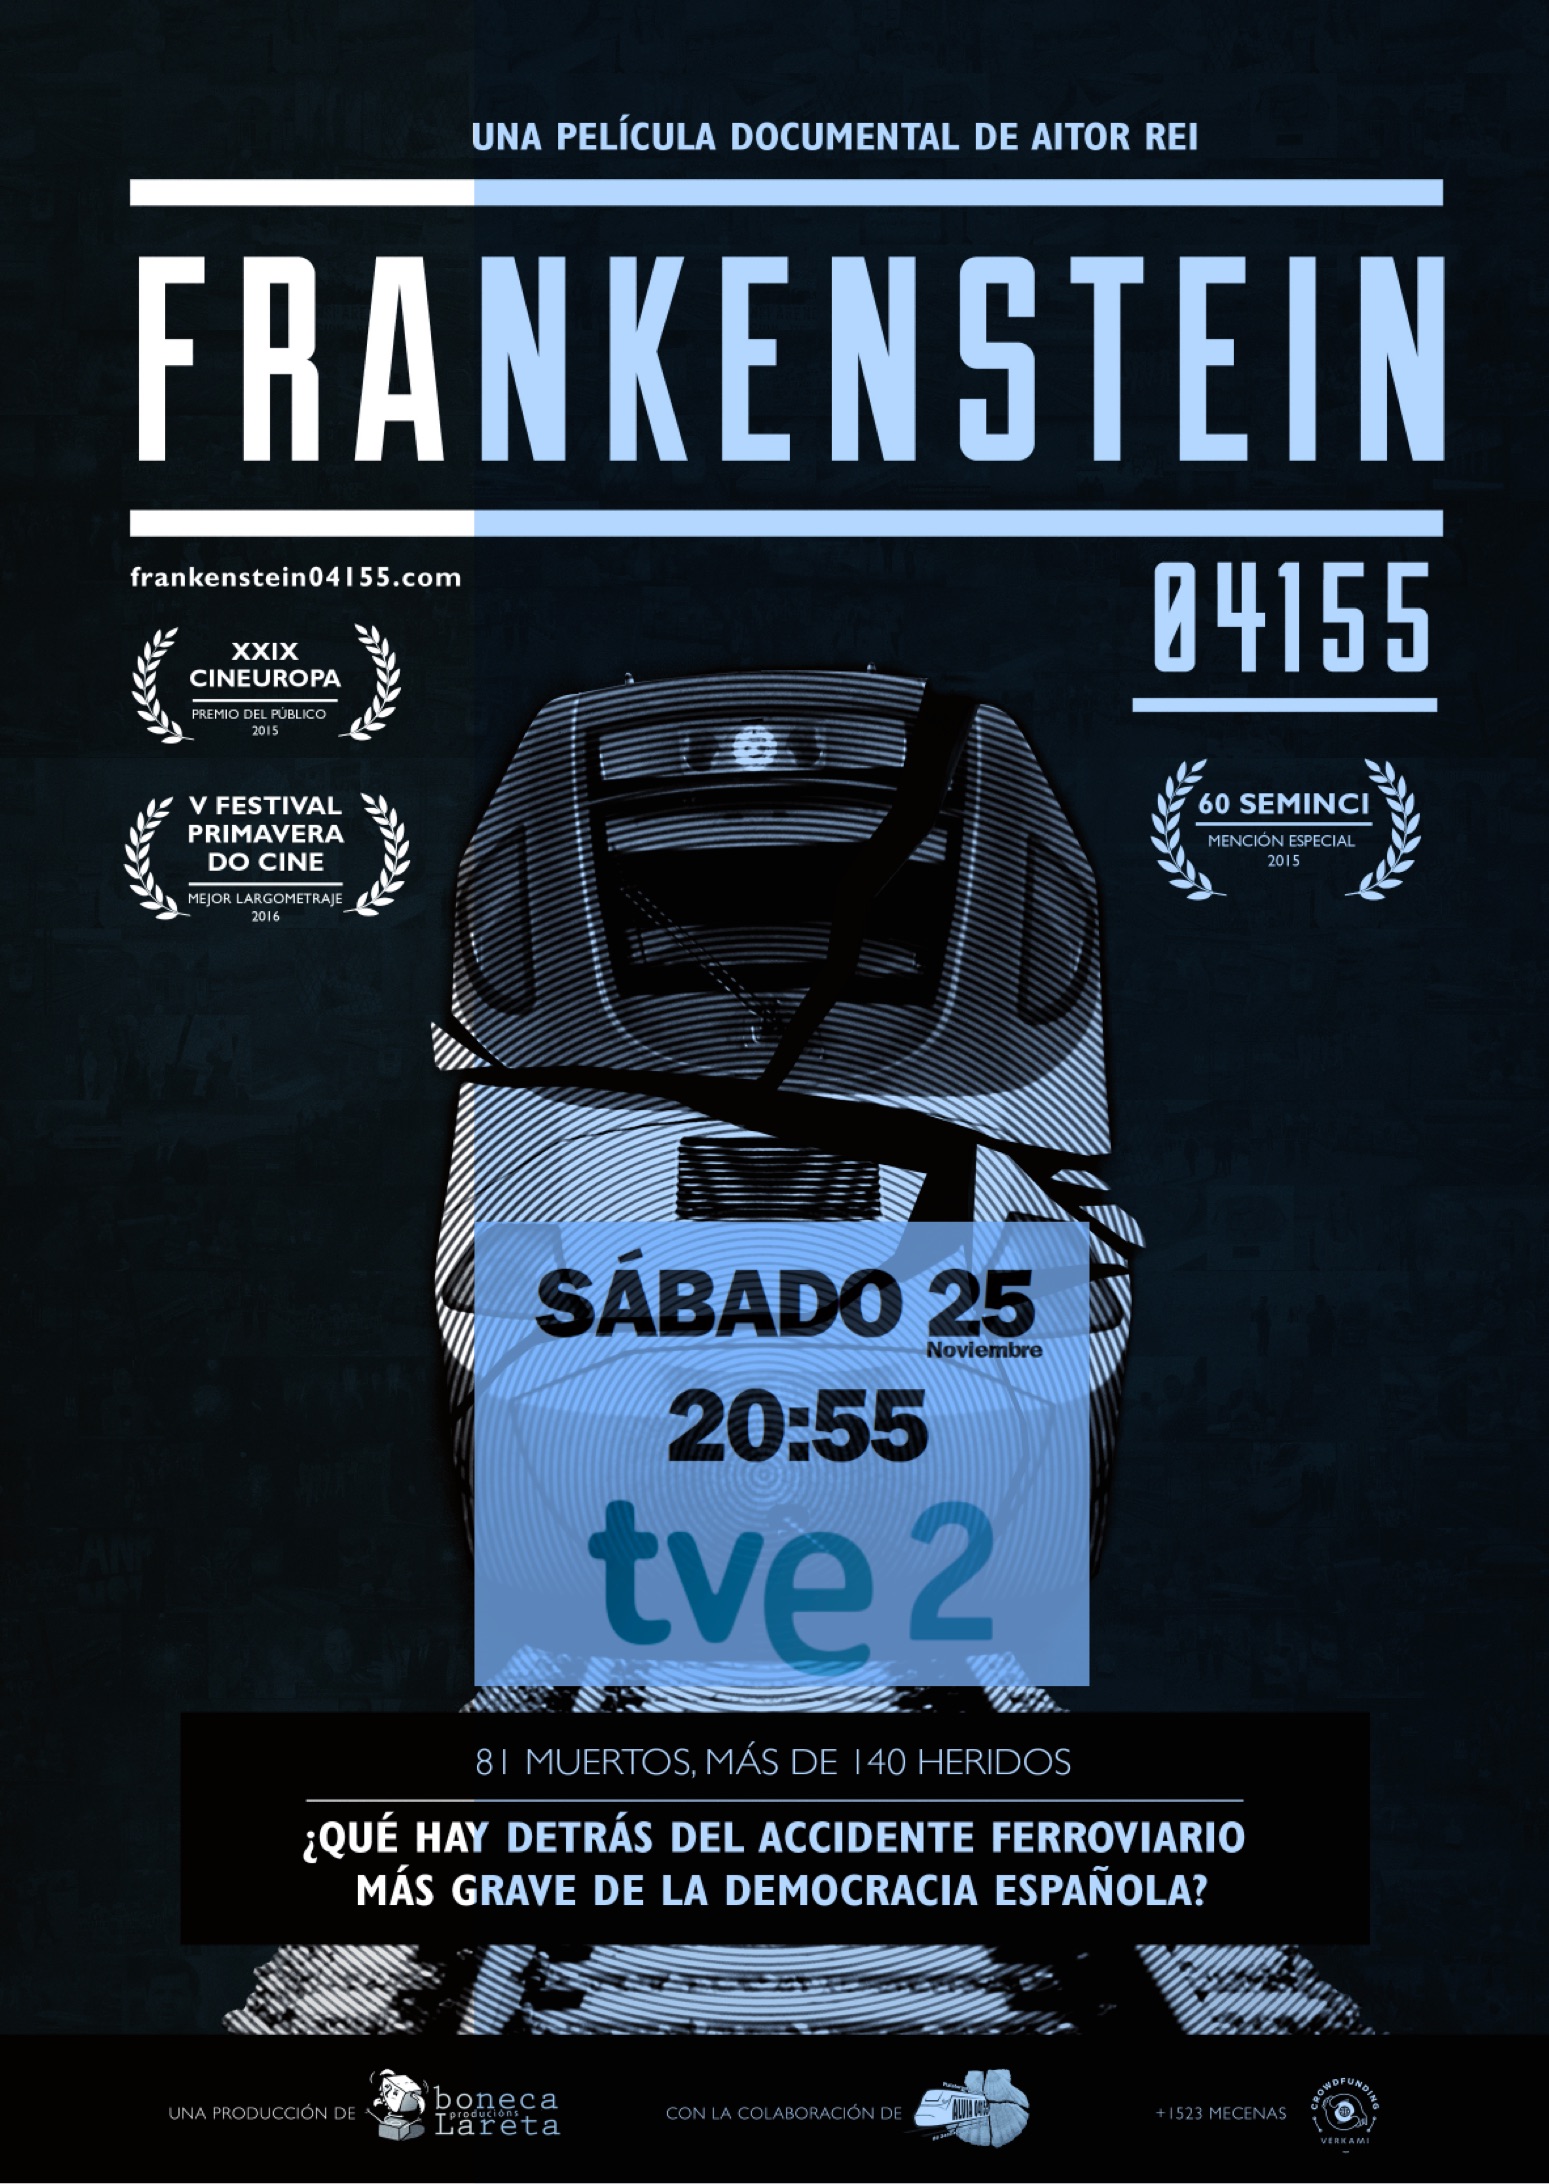 La 2 emitirá un documental sobre el accidente ferroviario de Santiago con un vecino de Alcorcón fallecido